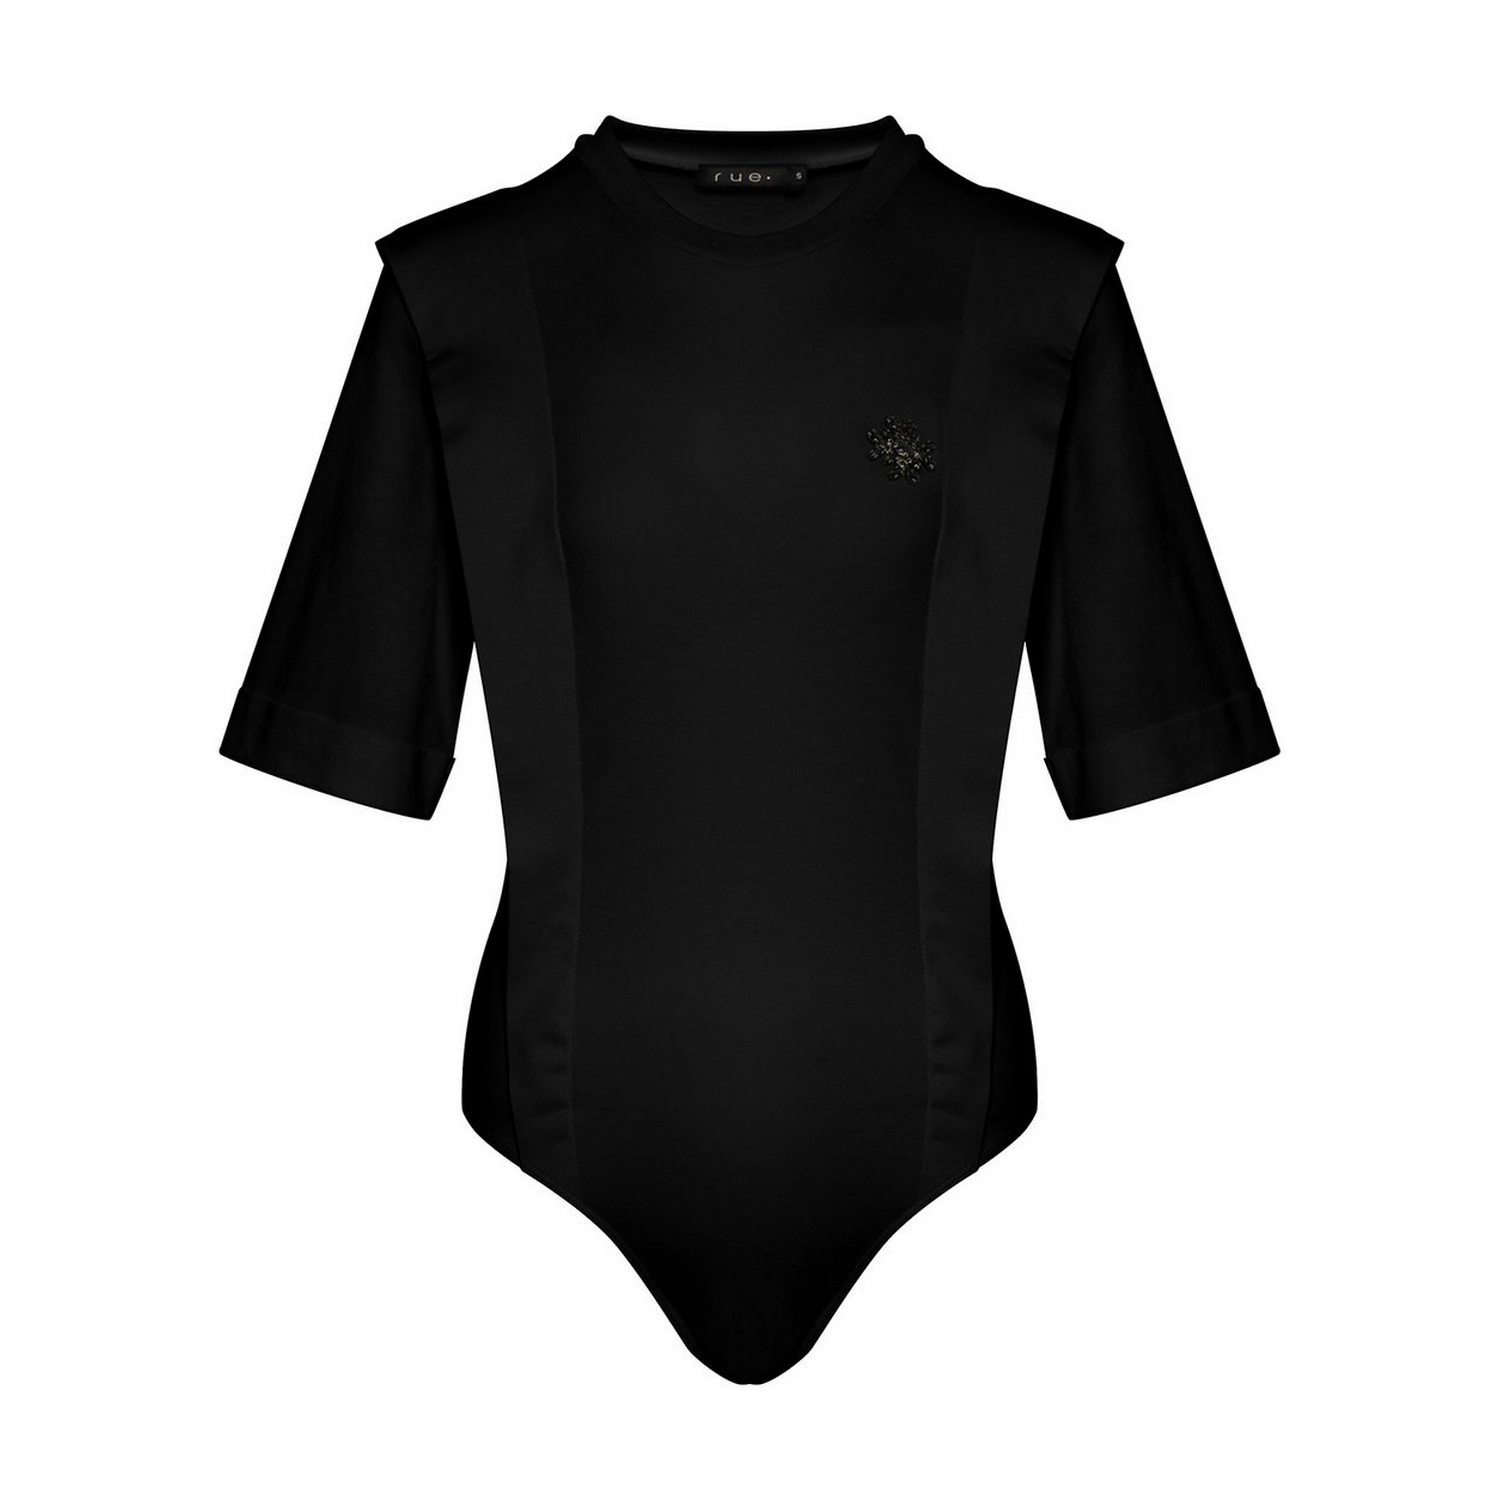 Black Short Sleeve Bodysuits for Women